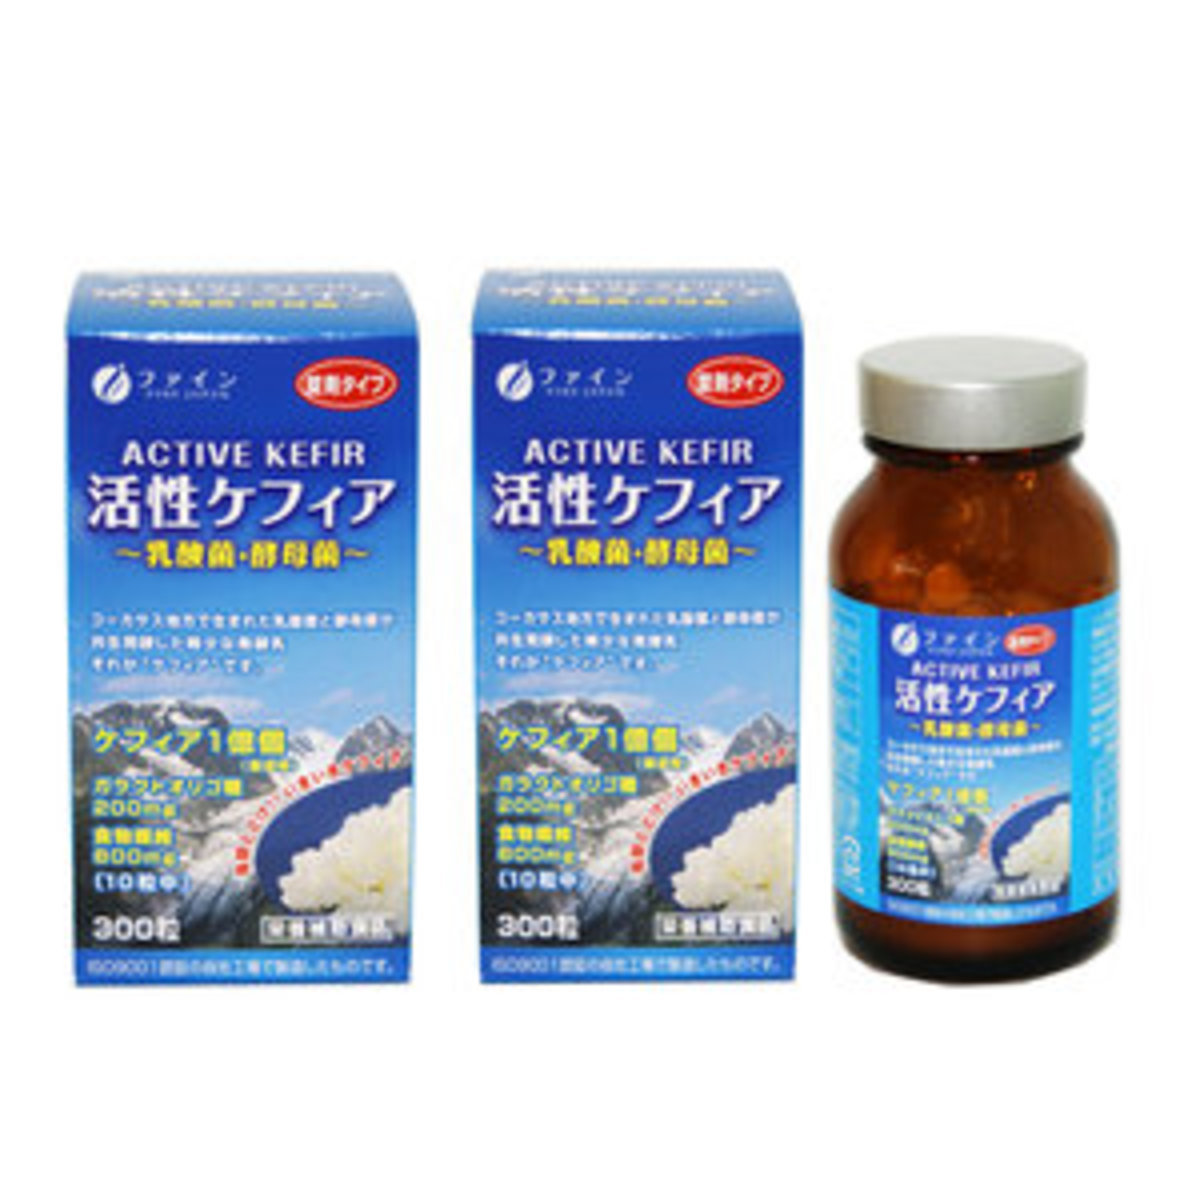 日本 ACTIVE KEFIR 乳酸菌酵母菌 兩瓶優惠套裝平行進口 ( 共600粒 )